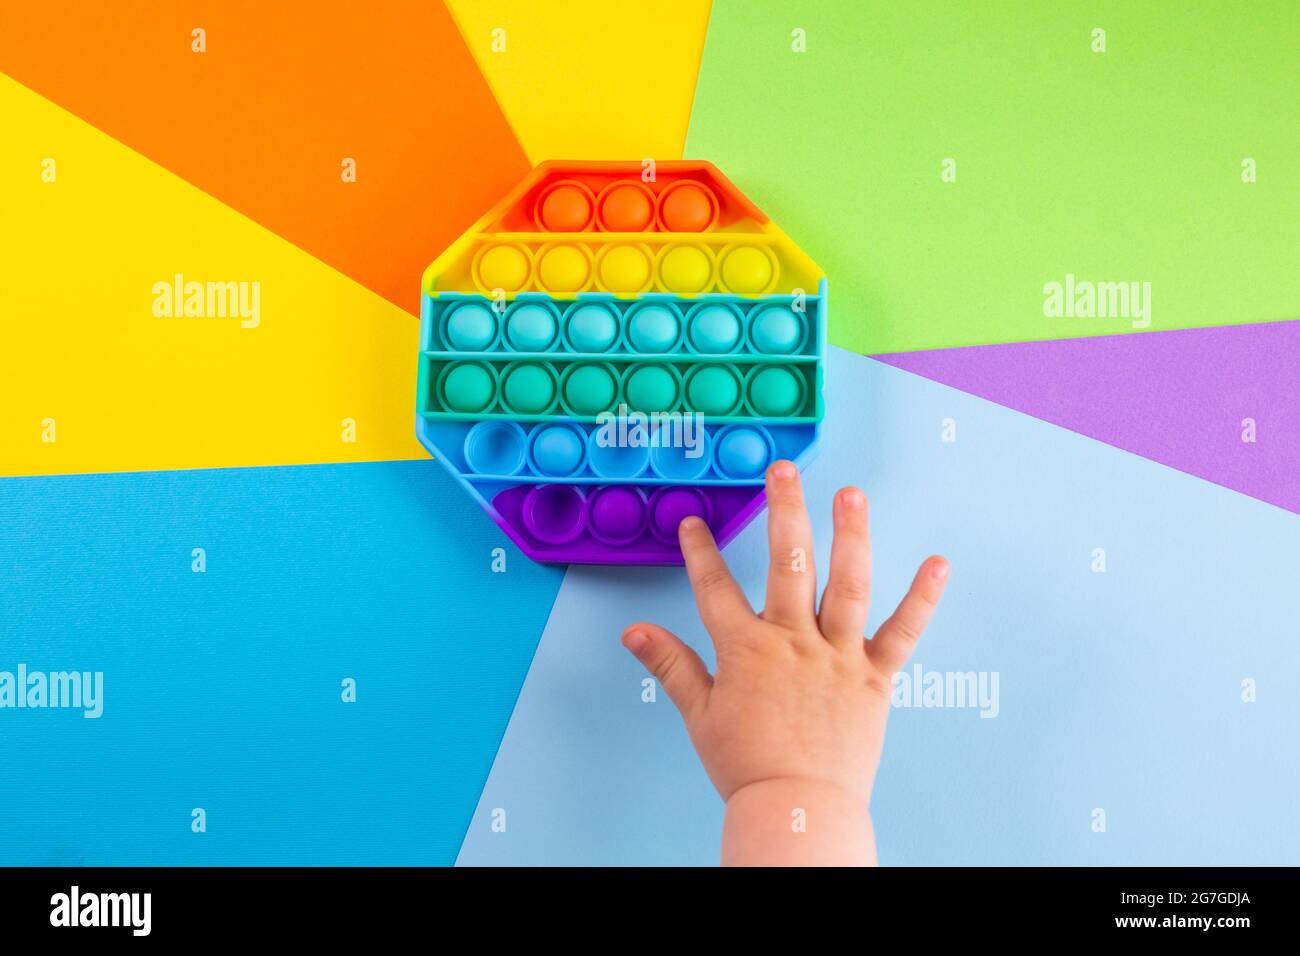 Kinder Hände schieben sensorische popit auf bunten Hintergrund. Antistress-Pop-it-Spielzeug. Rainbow Silikon sensorische Fidget Neue beliebte trendige Silikon-Spielzeug. Stockfoto